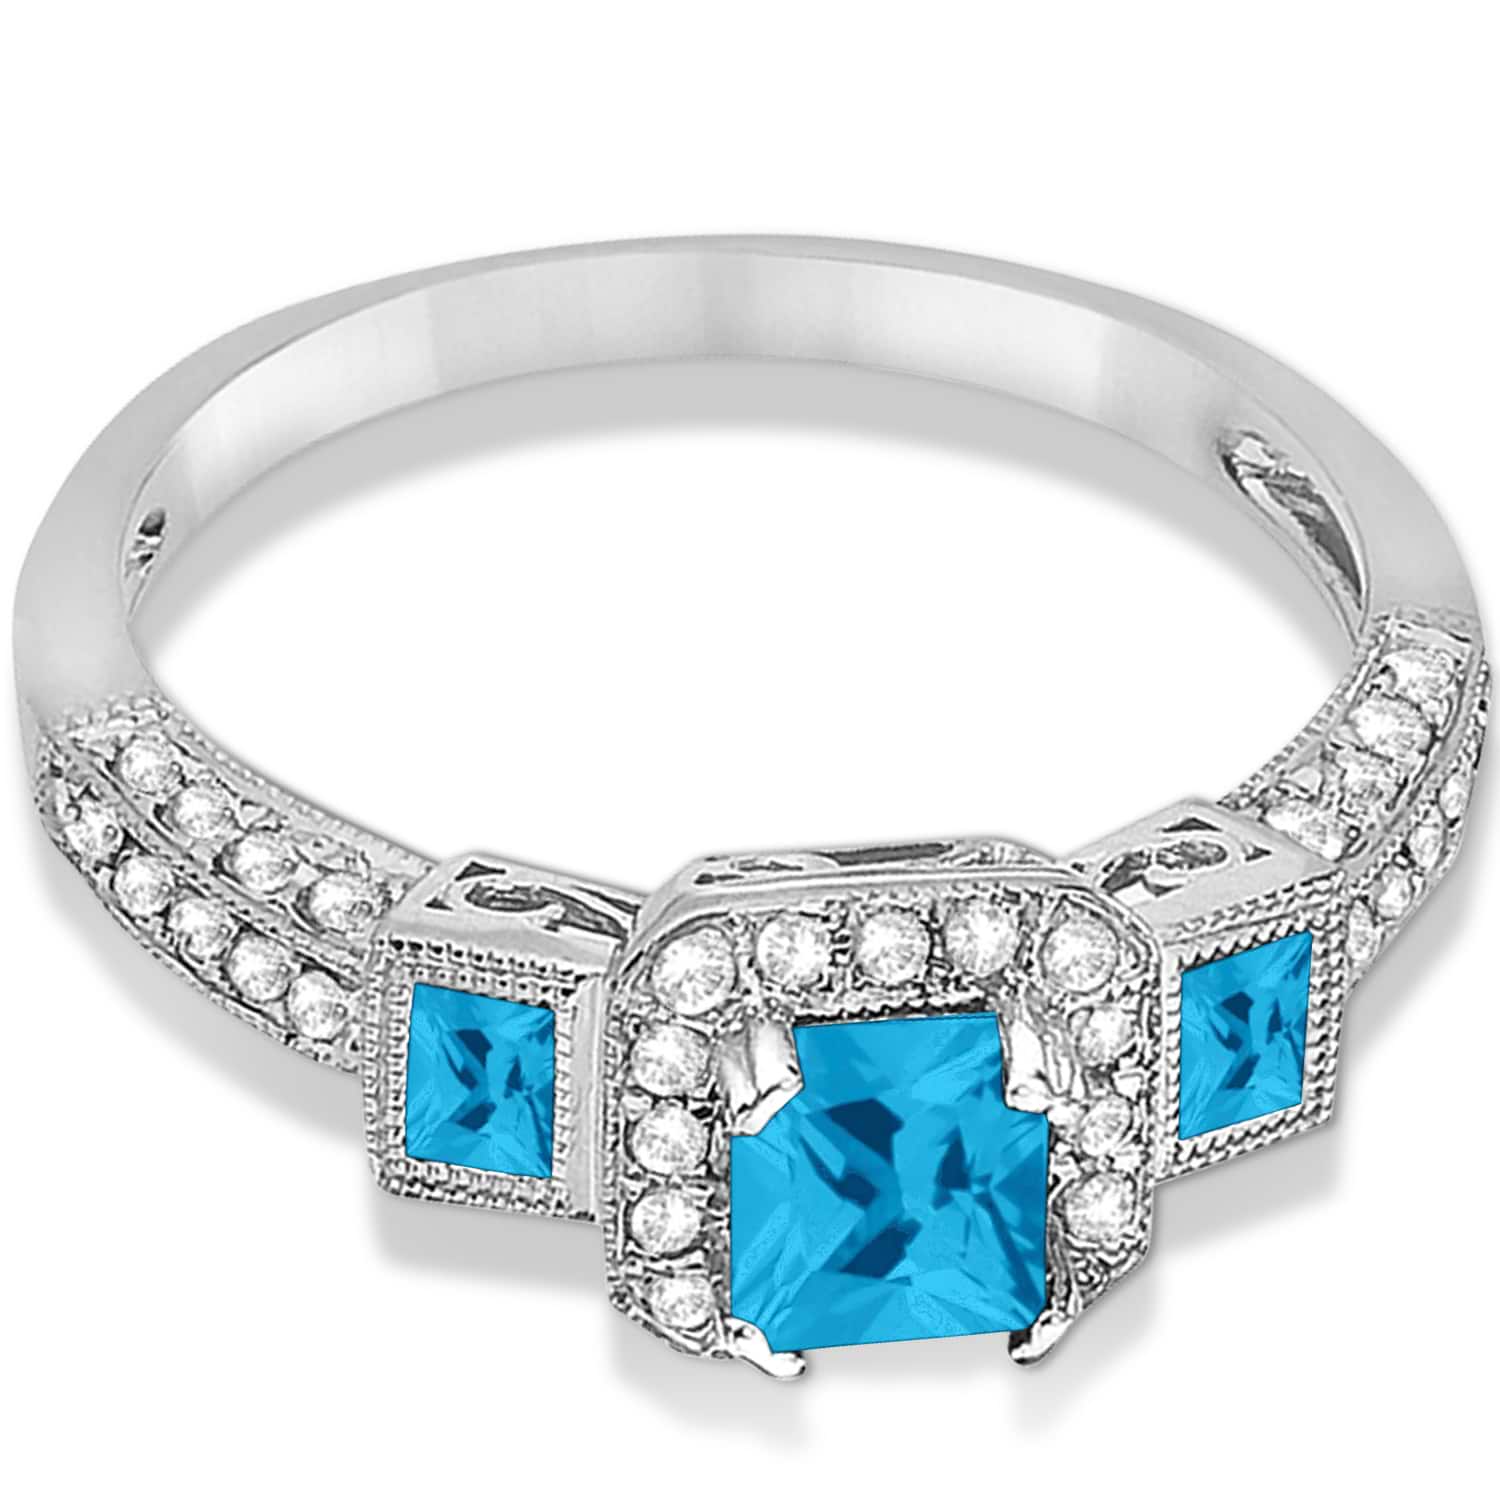 Blue Topaz & Diamond Engagement Ring 14k White Gold (1.35ctw)